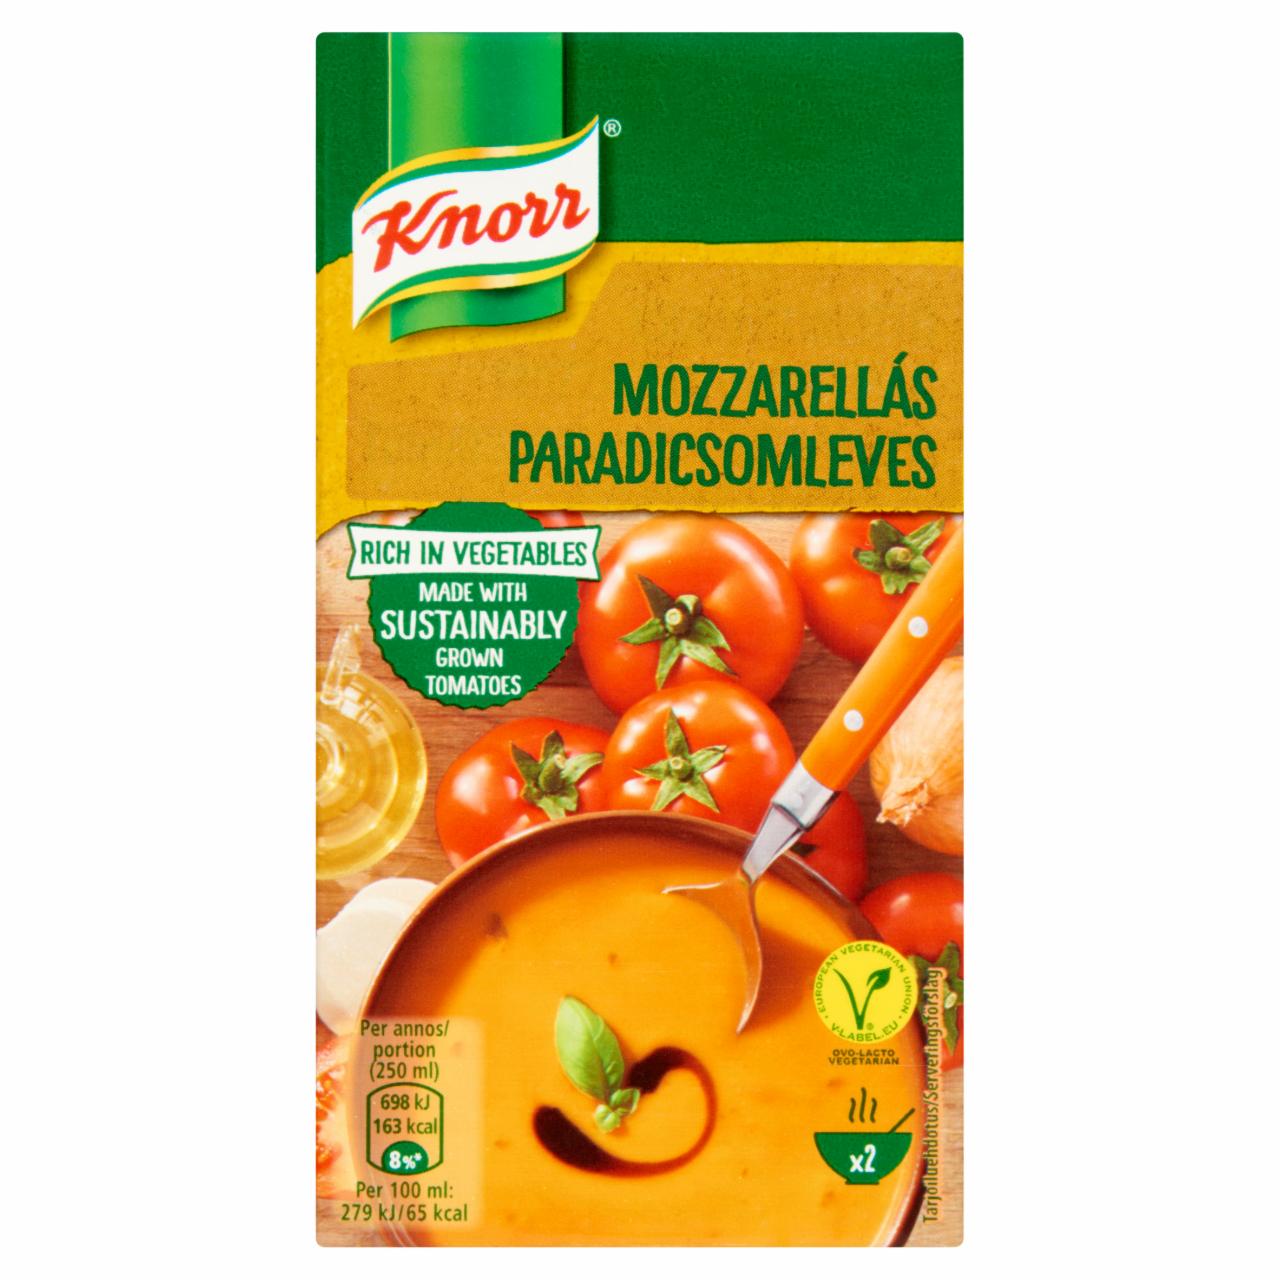 Képek - Knorr mozzarellás paradicsomleves 500 ml